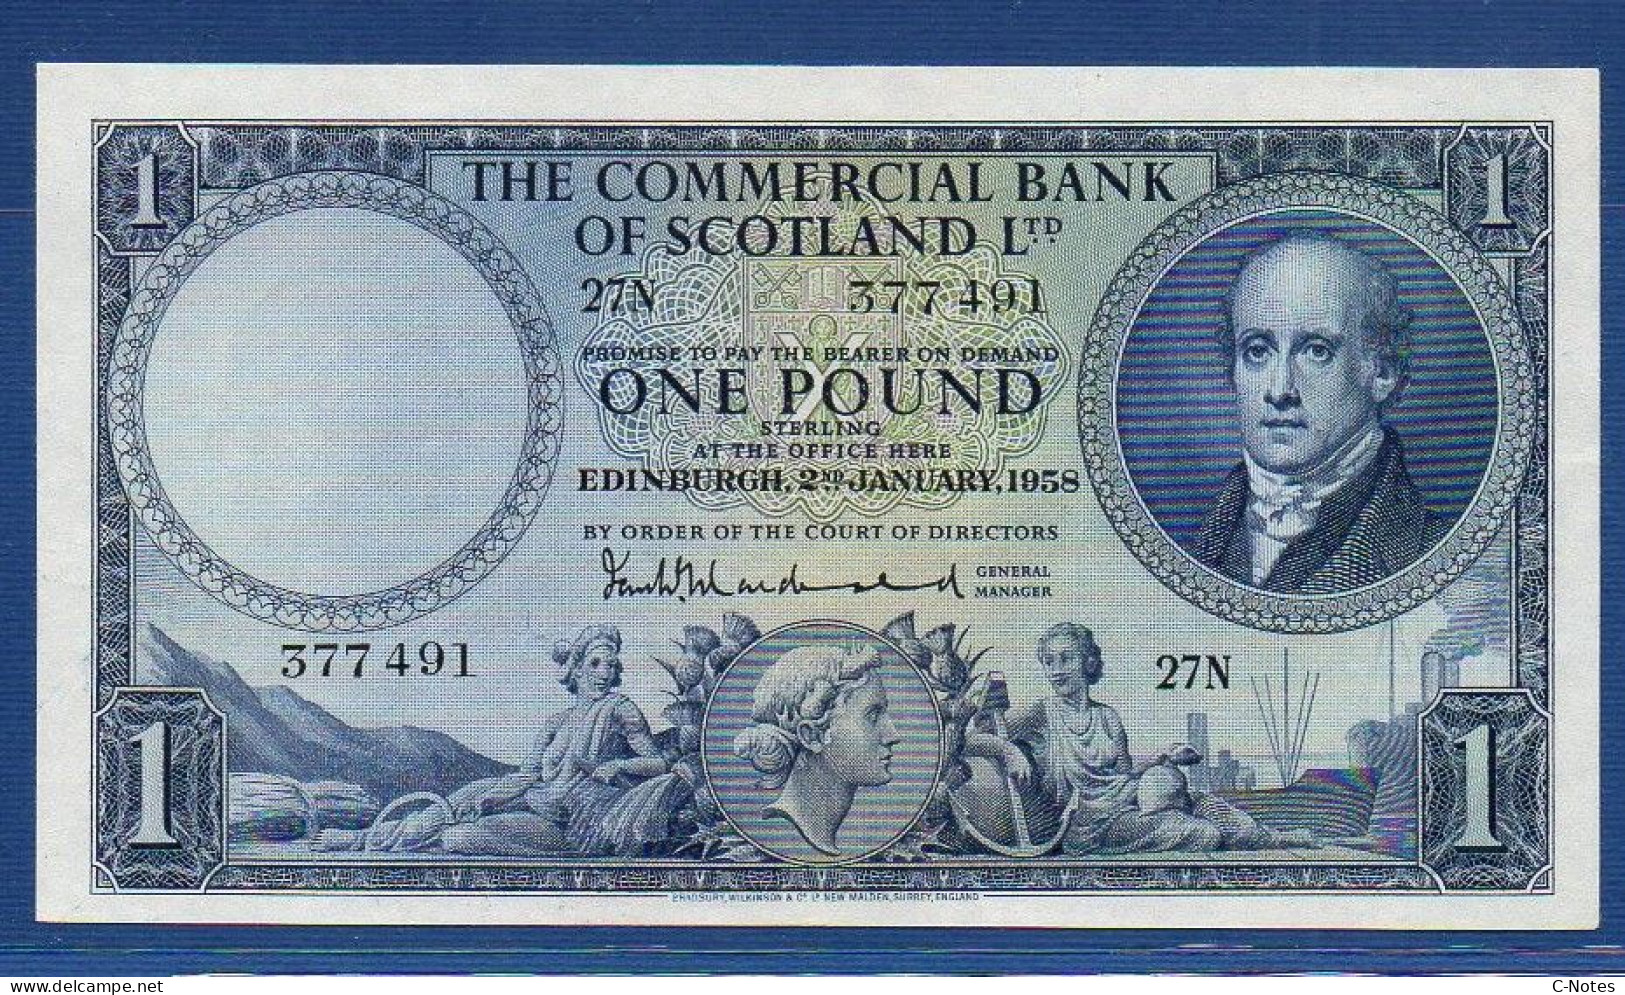 SCOTLAND - P.S336 – 1 POUND 02.01.1958 AUNC, S/n 27N 377491 - 1 Pound